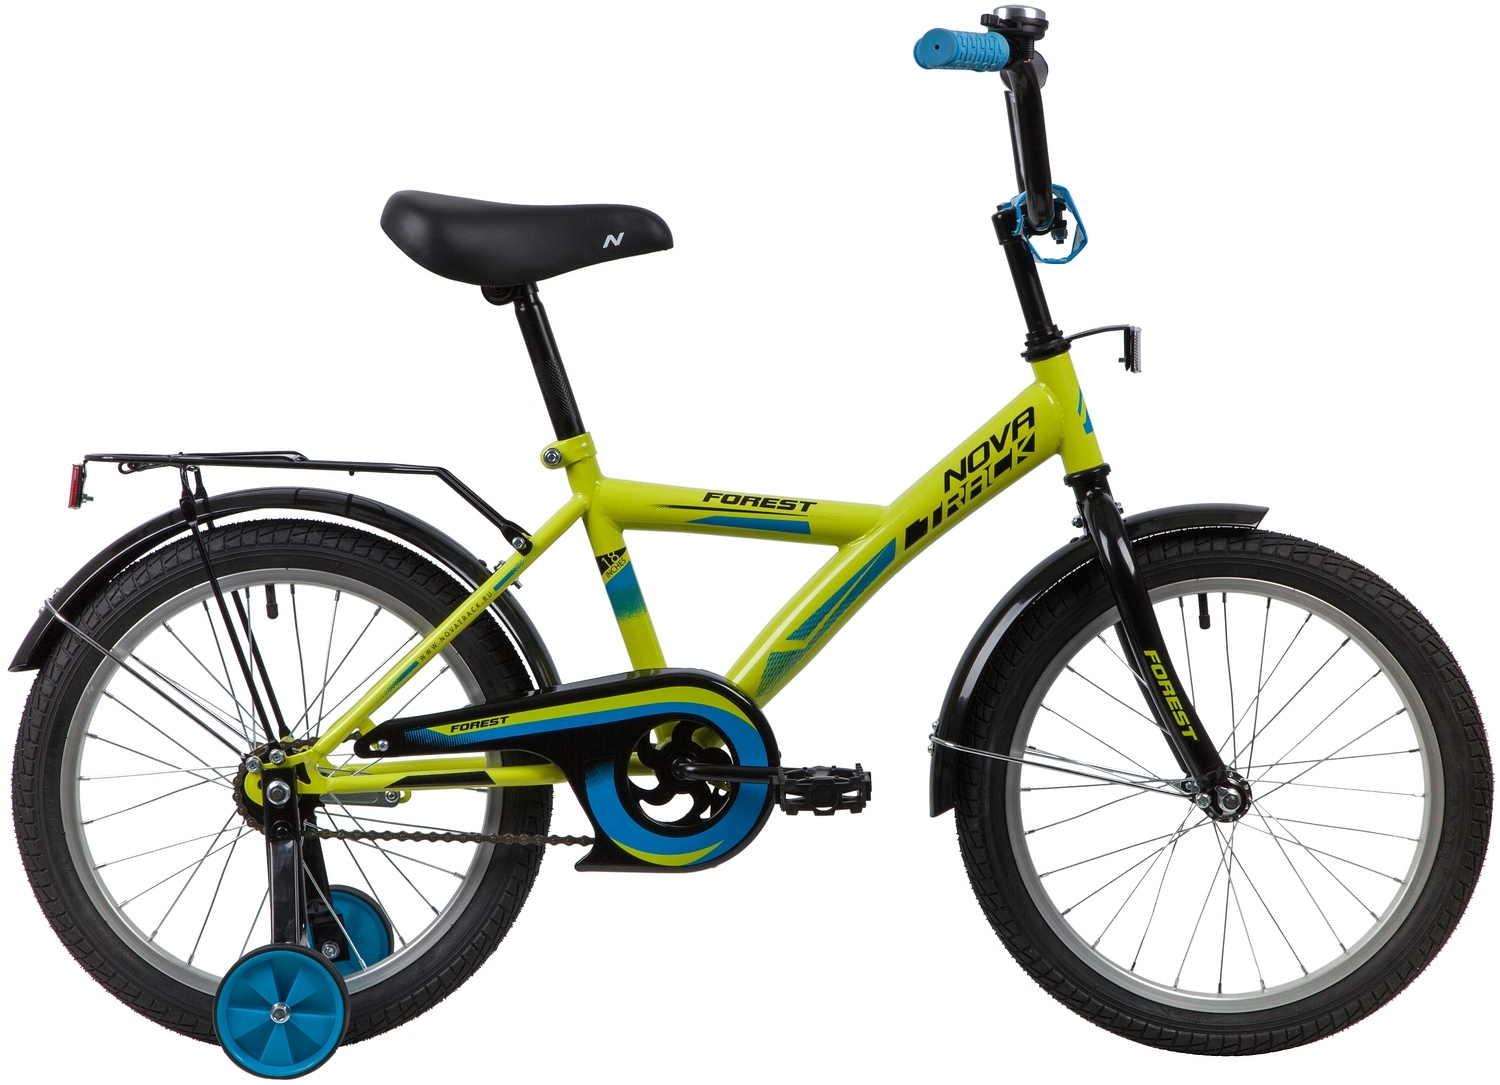  Отзывы о Детском велосипеде Novatrack YT Forest 18 2020